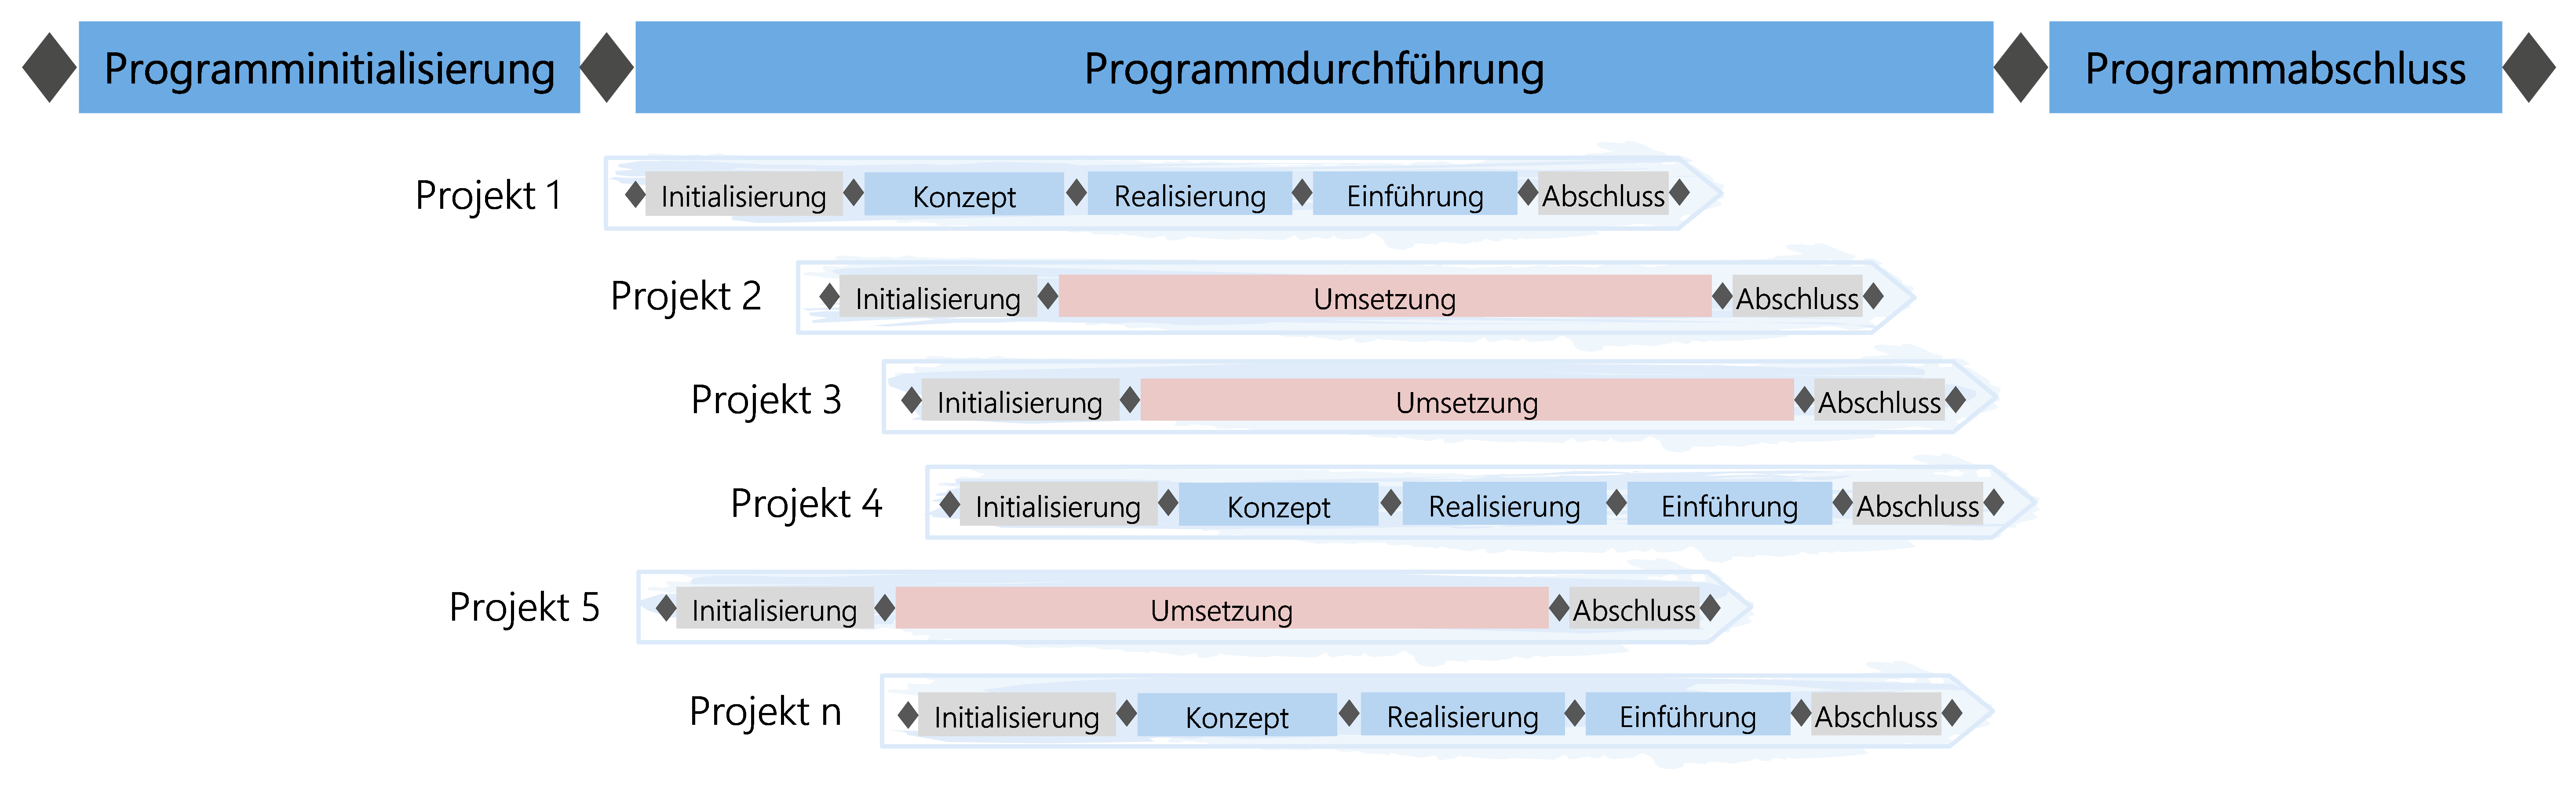 Abbildung : Projekte zu Programmen zusammengefasst